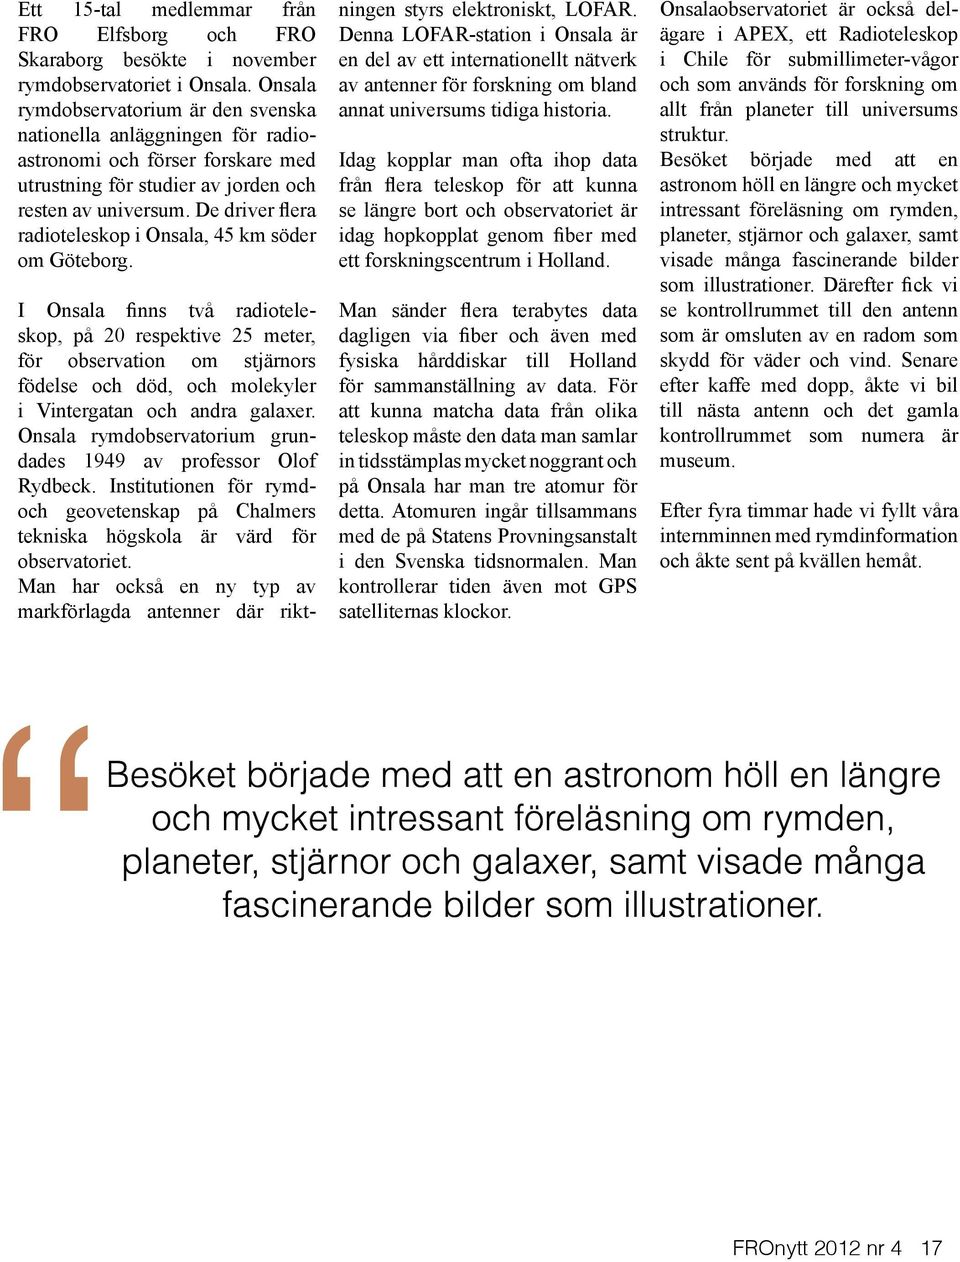 De driver flera radioteleskop i Onsala, 45 km söder om Göteborg.